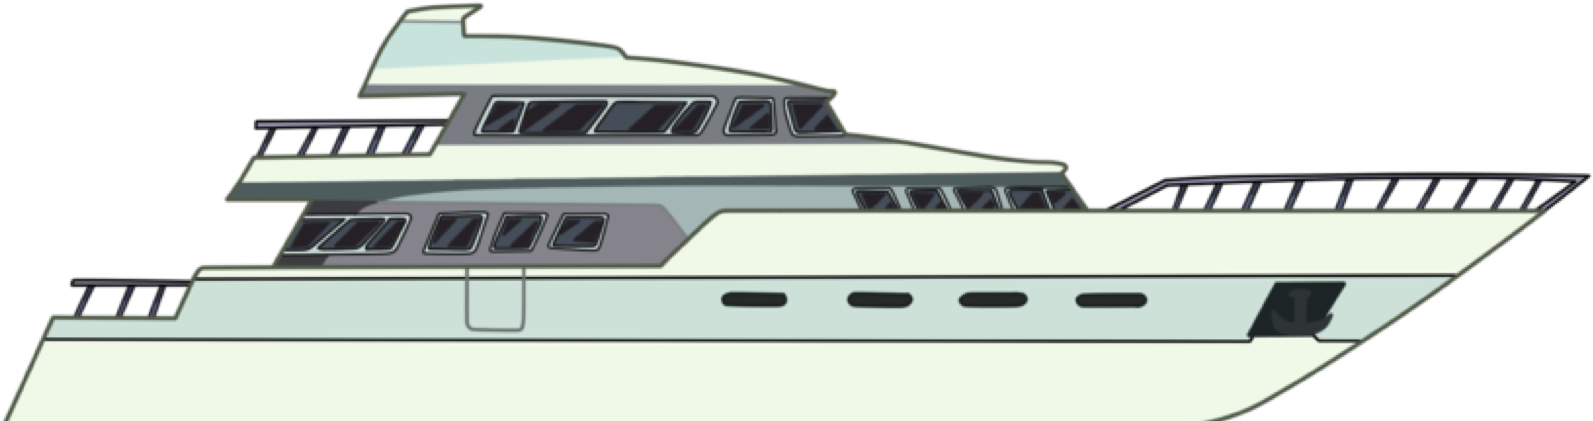 Luxury Yacht Illustration